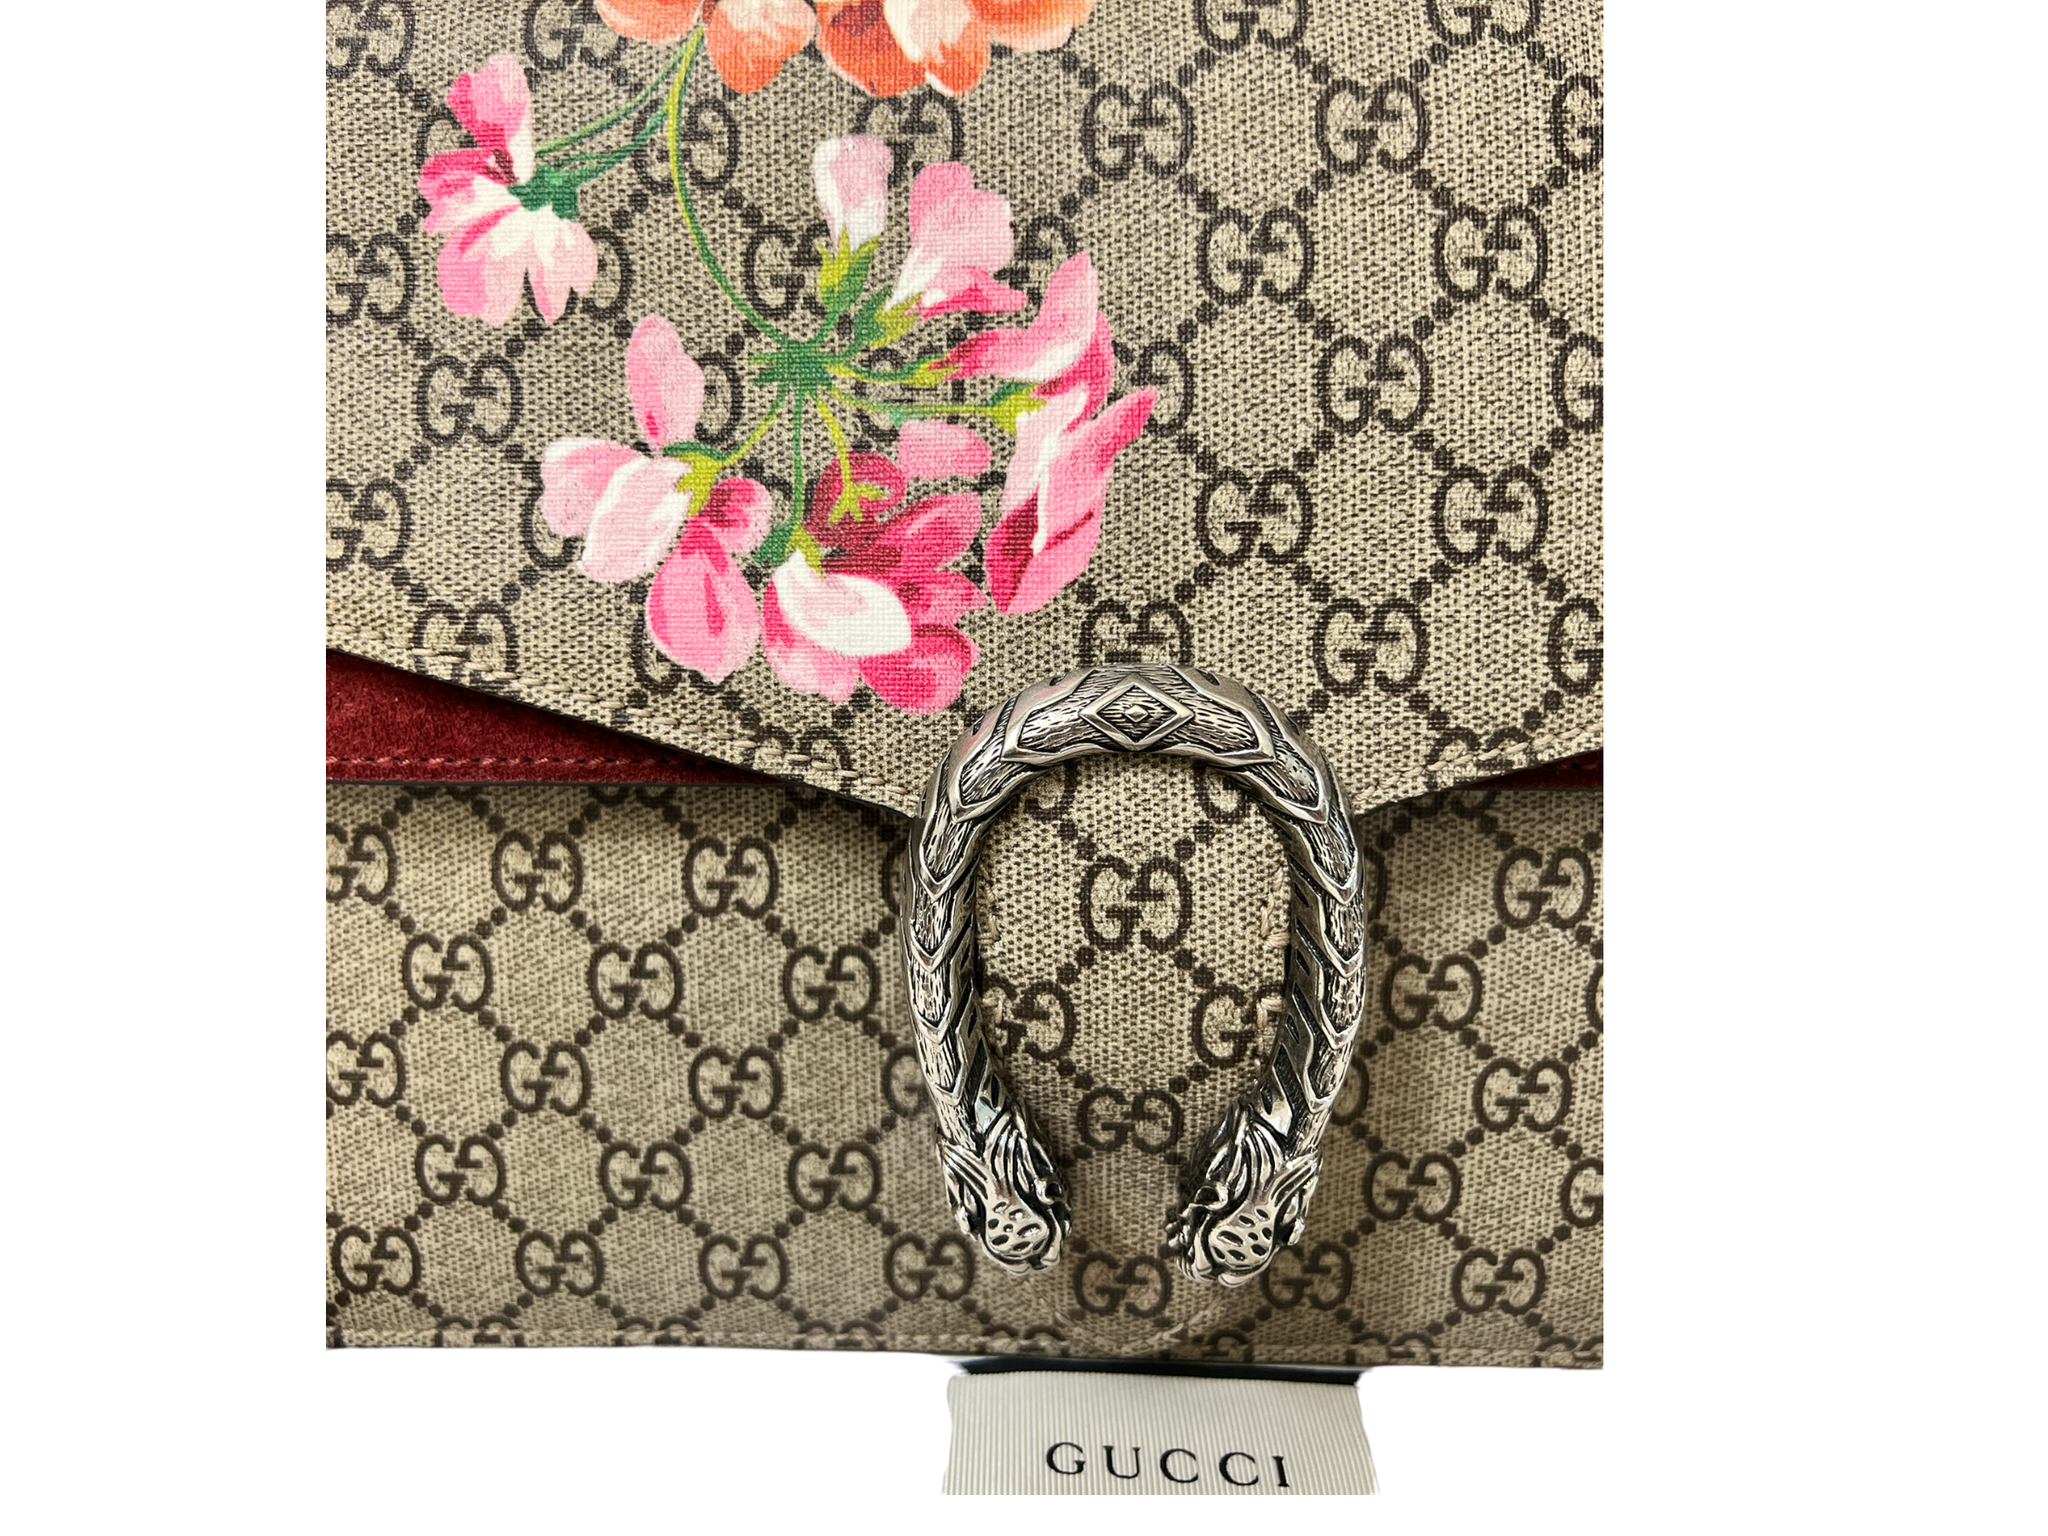 GUCCI GG Supreme Monogram Blooms Print Medium Dionysus Shoulder Bag